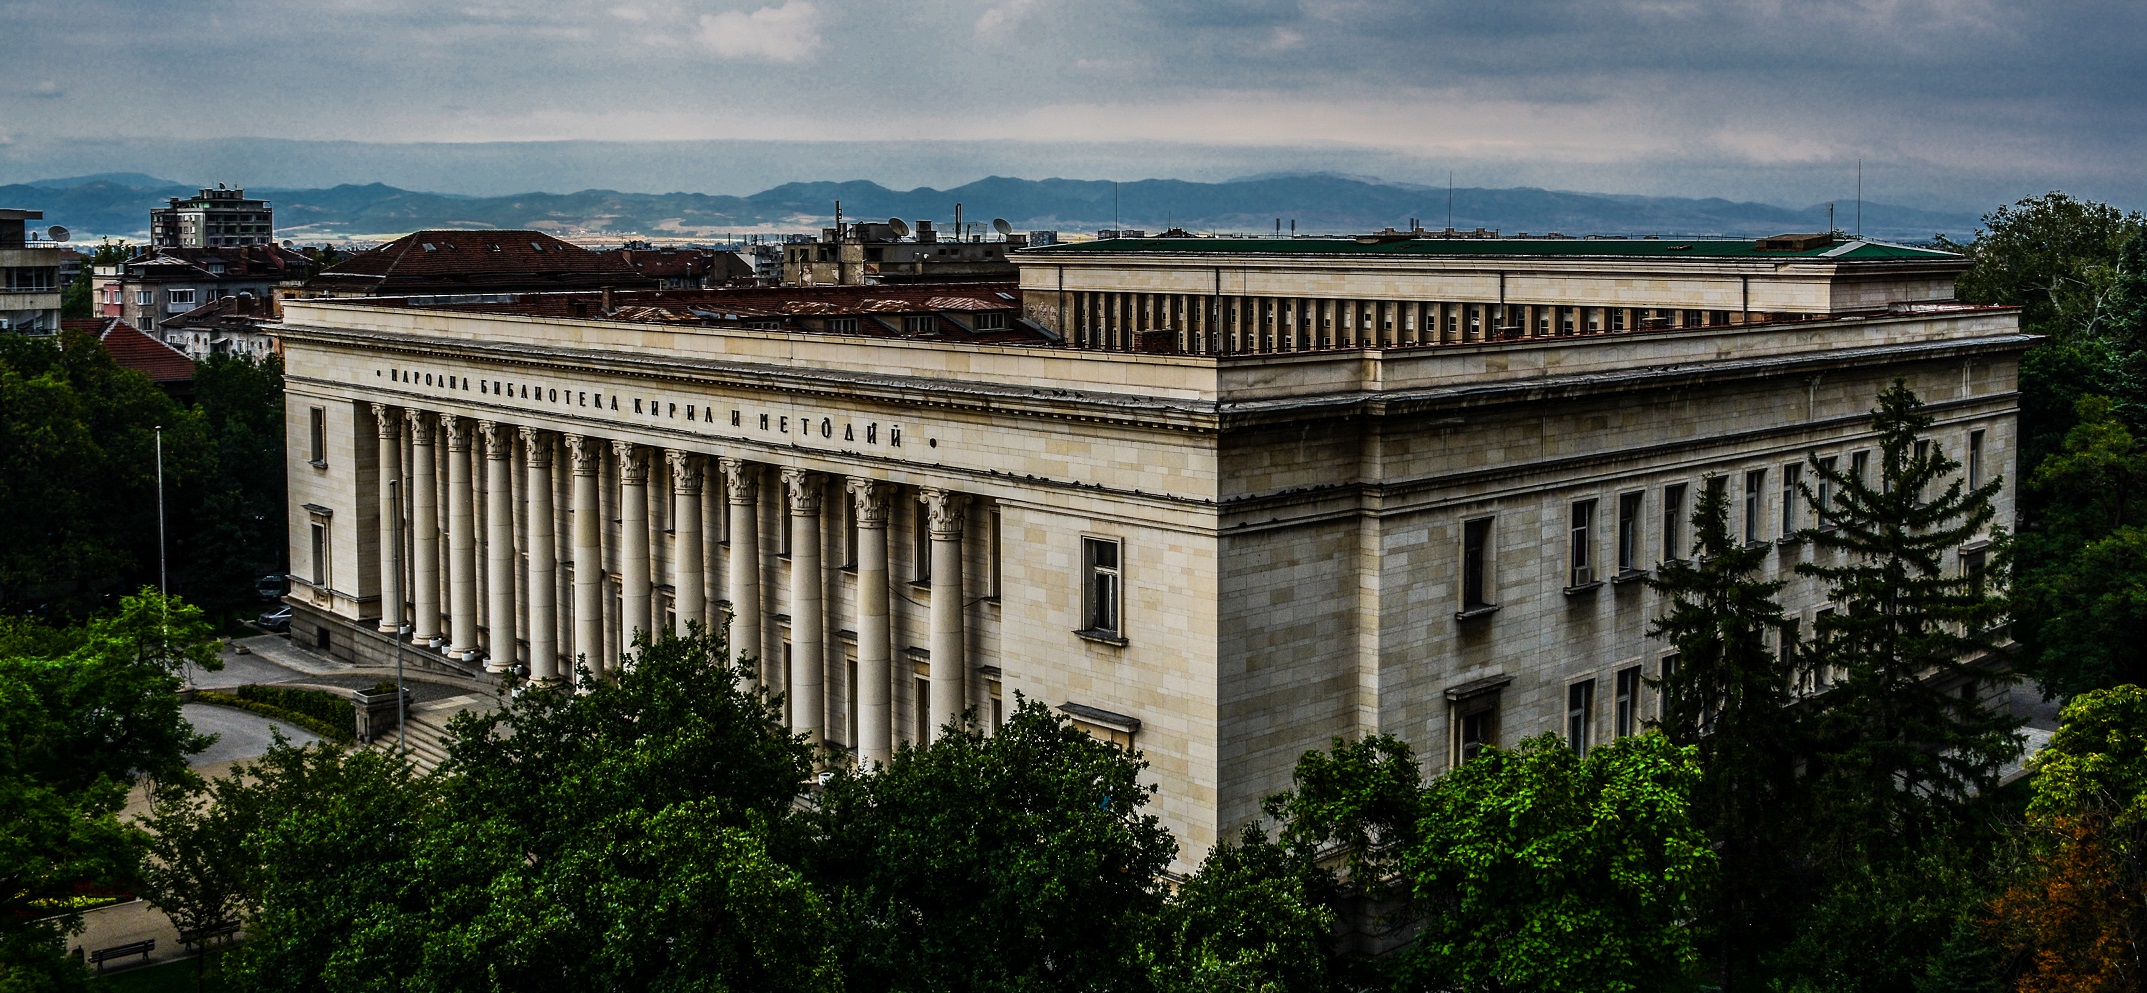 Националната библиотека – културно средище и архитектурен шедьовър